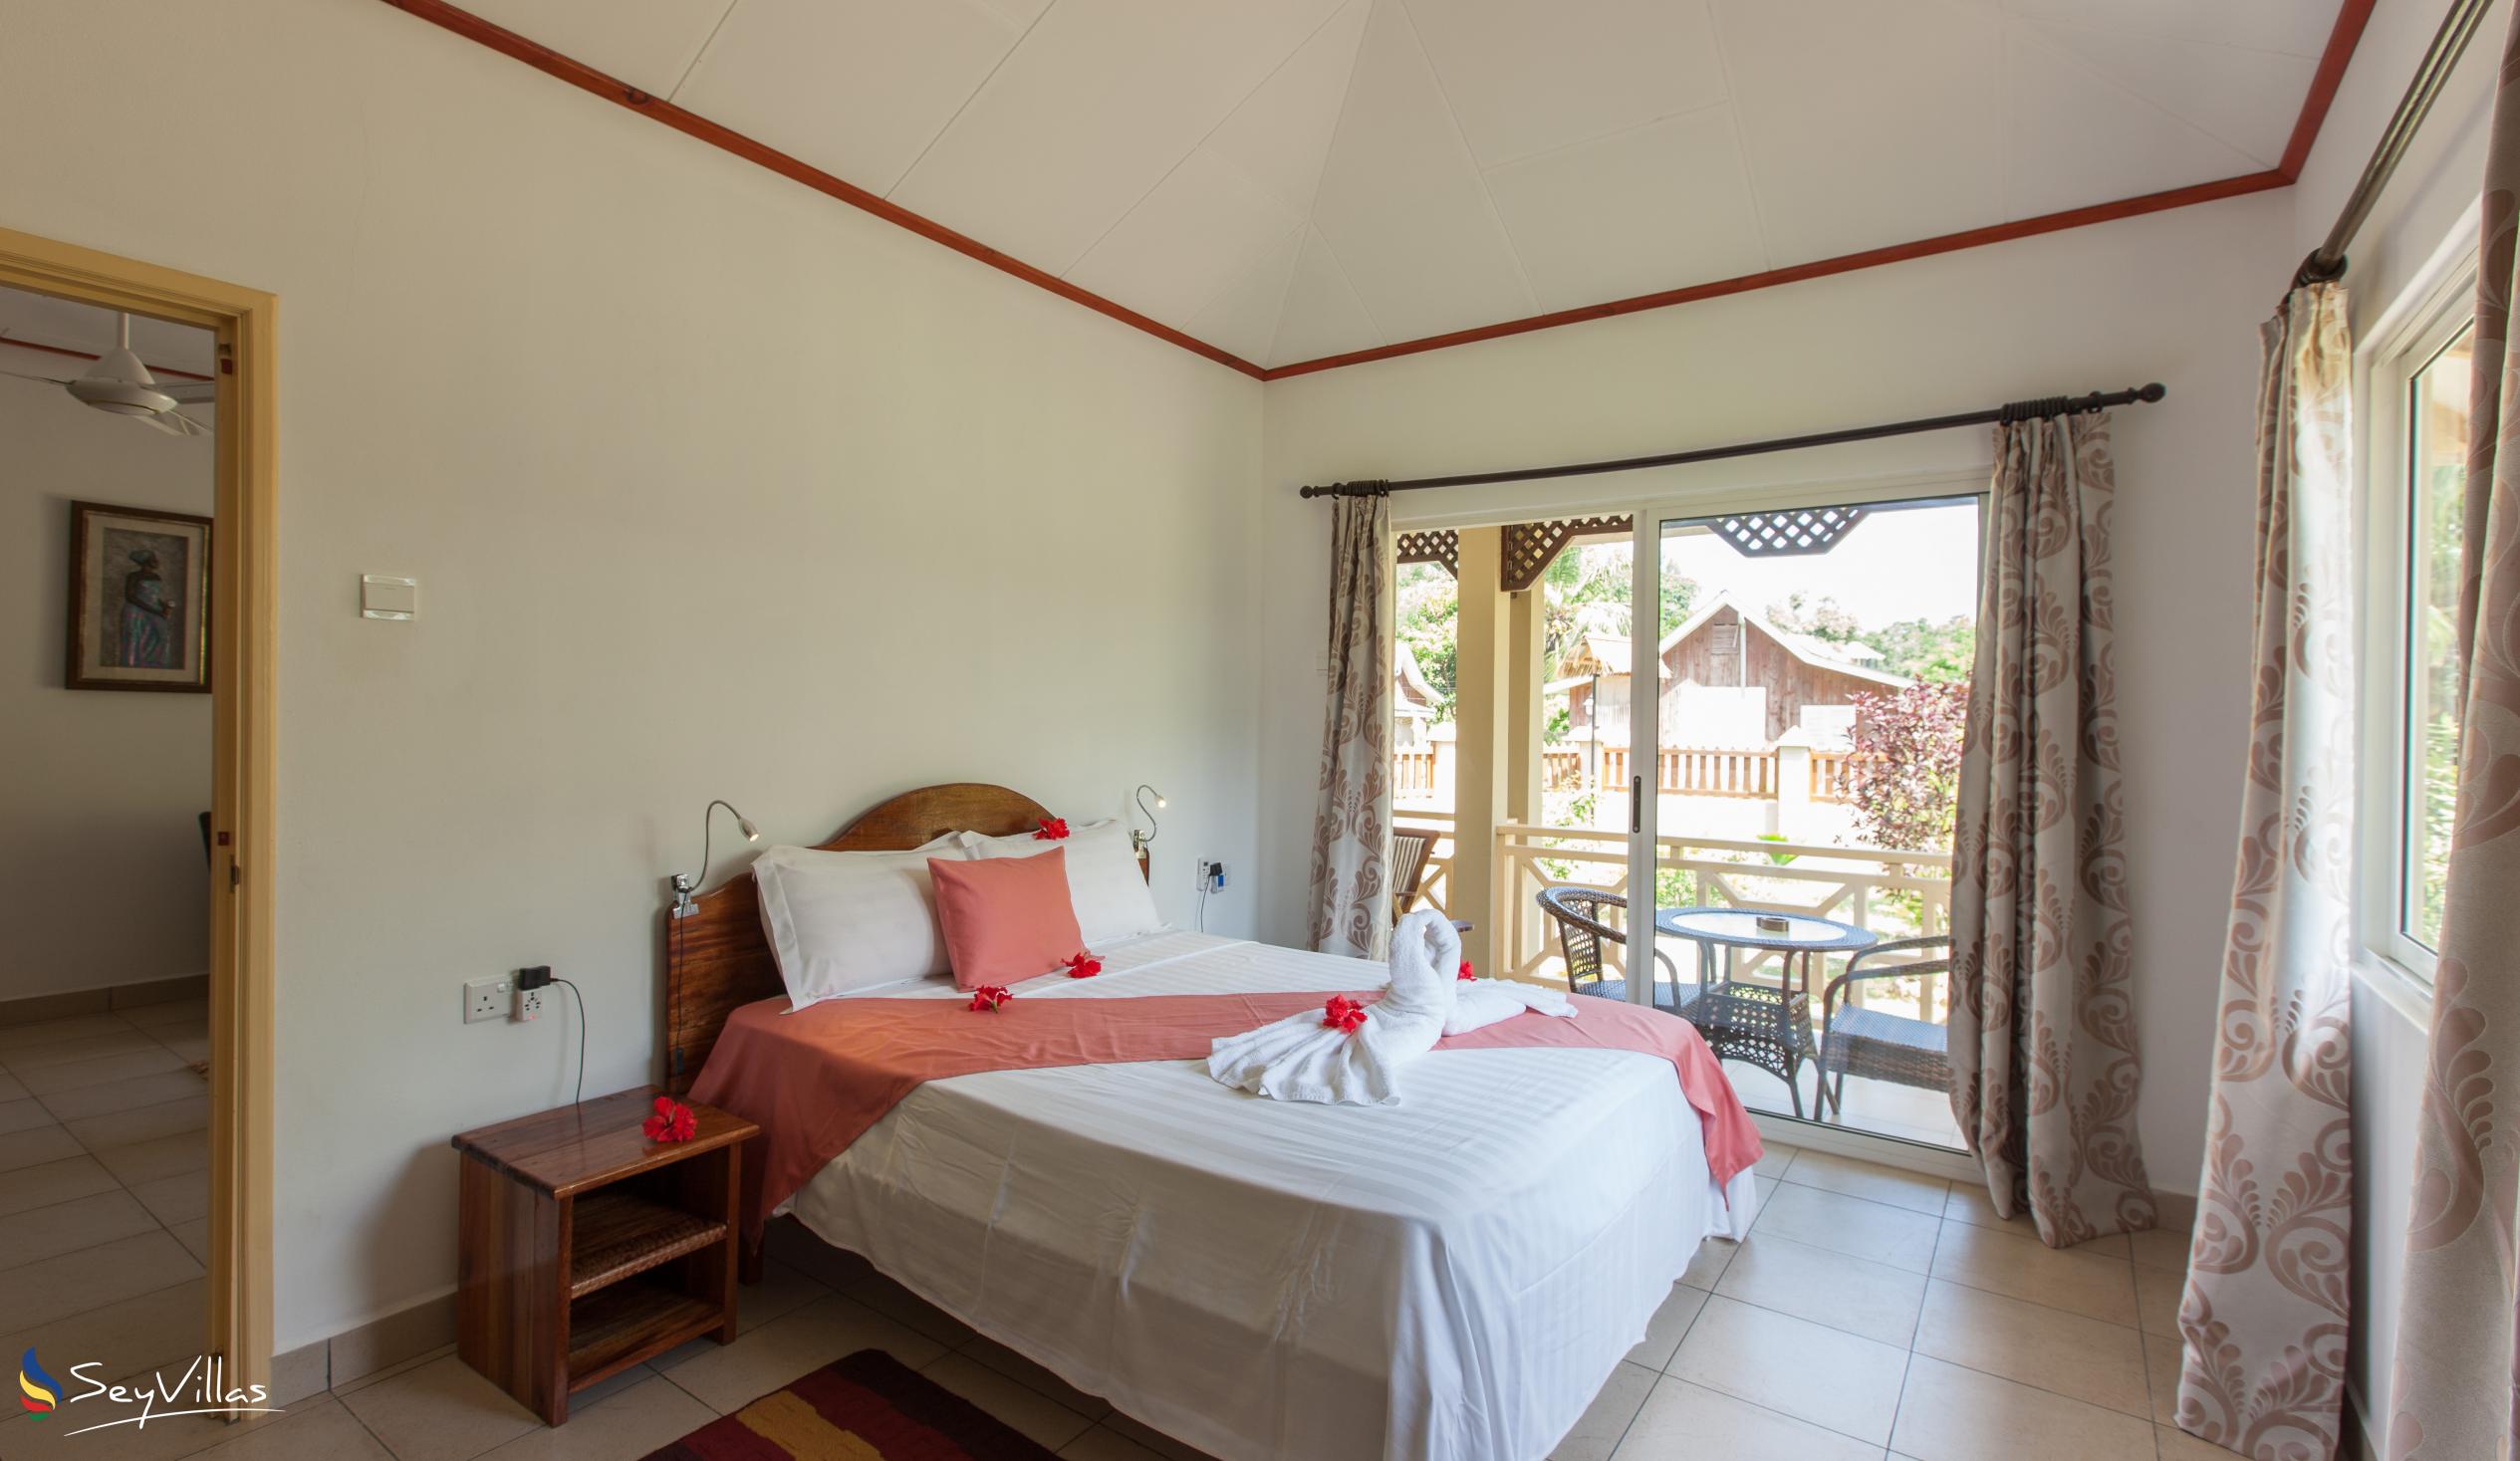 Foto 49: Hostellerie La Digue - Chalet mit 2 Schlafzimmern - La Digue (Seychellen)